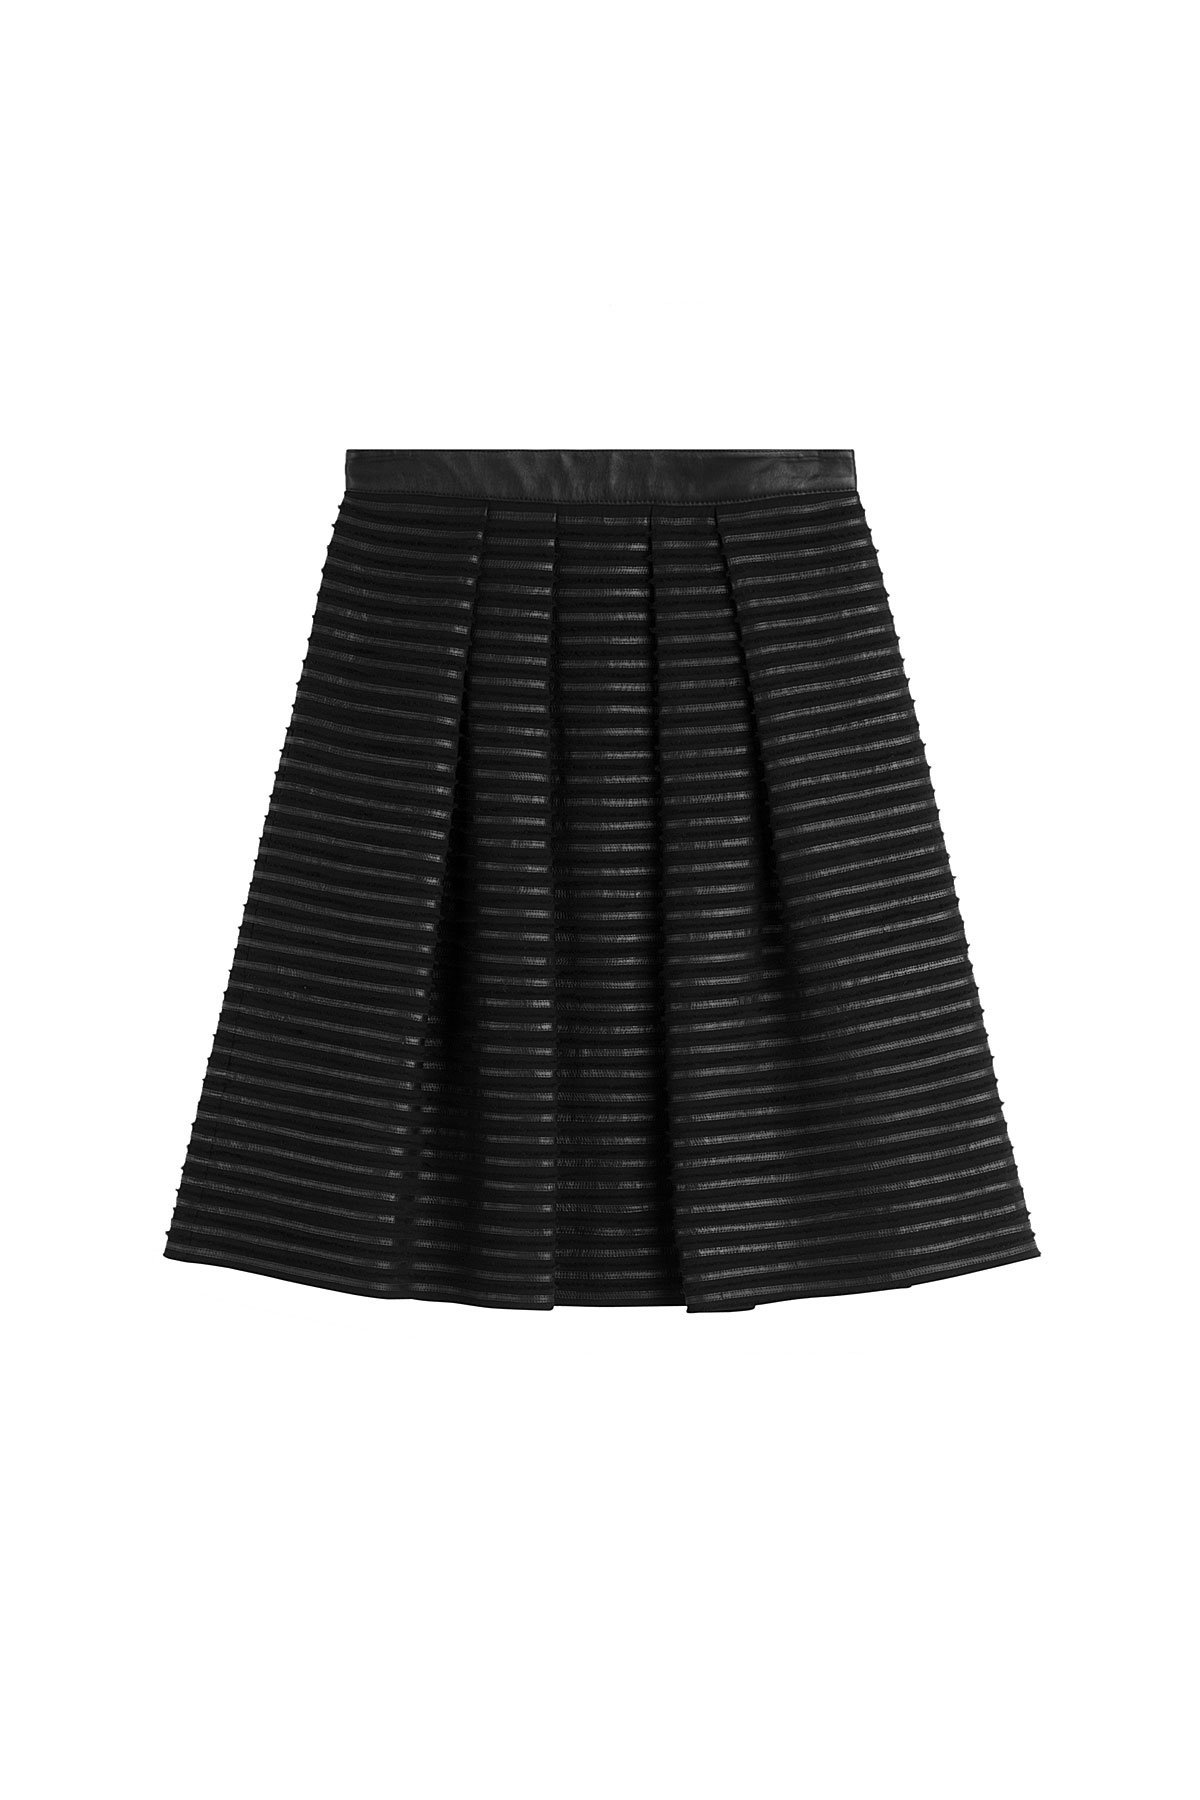 Burberry - Pleated Silk Skirt